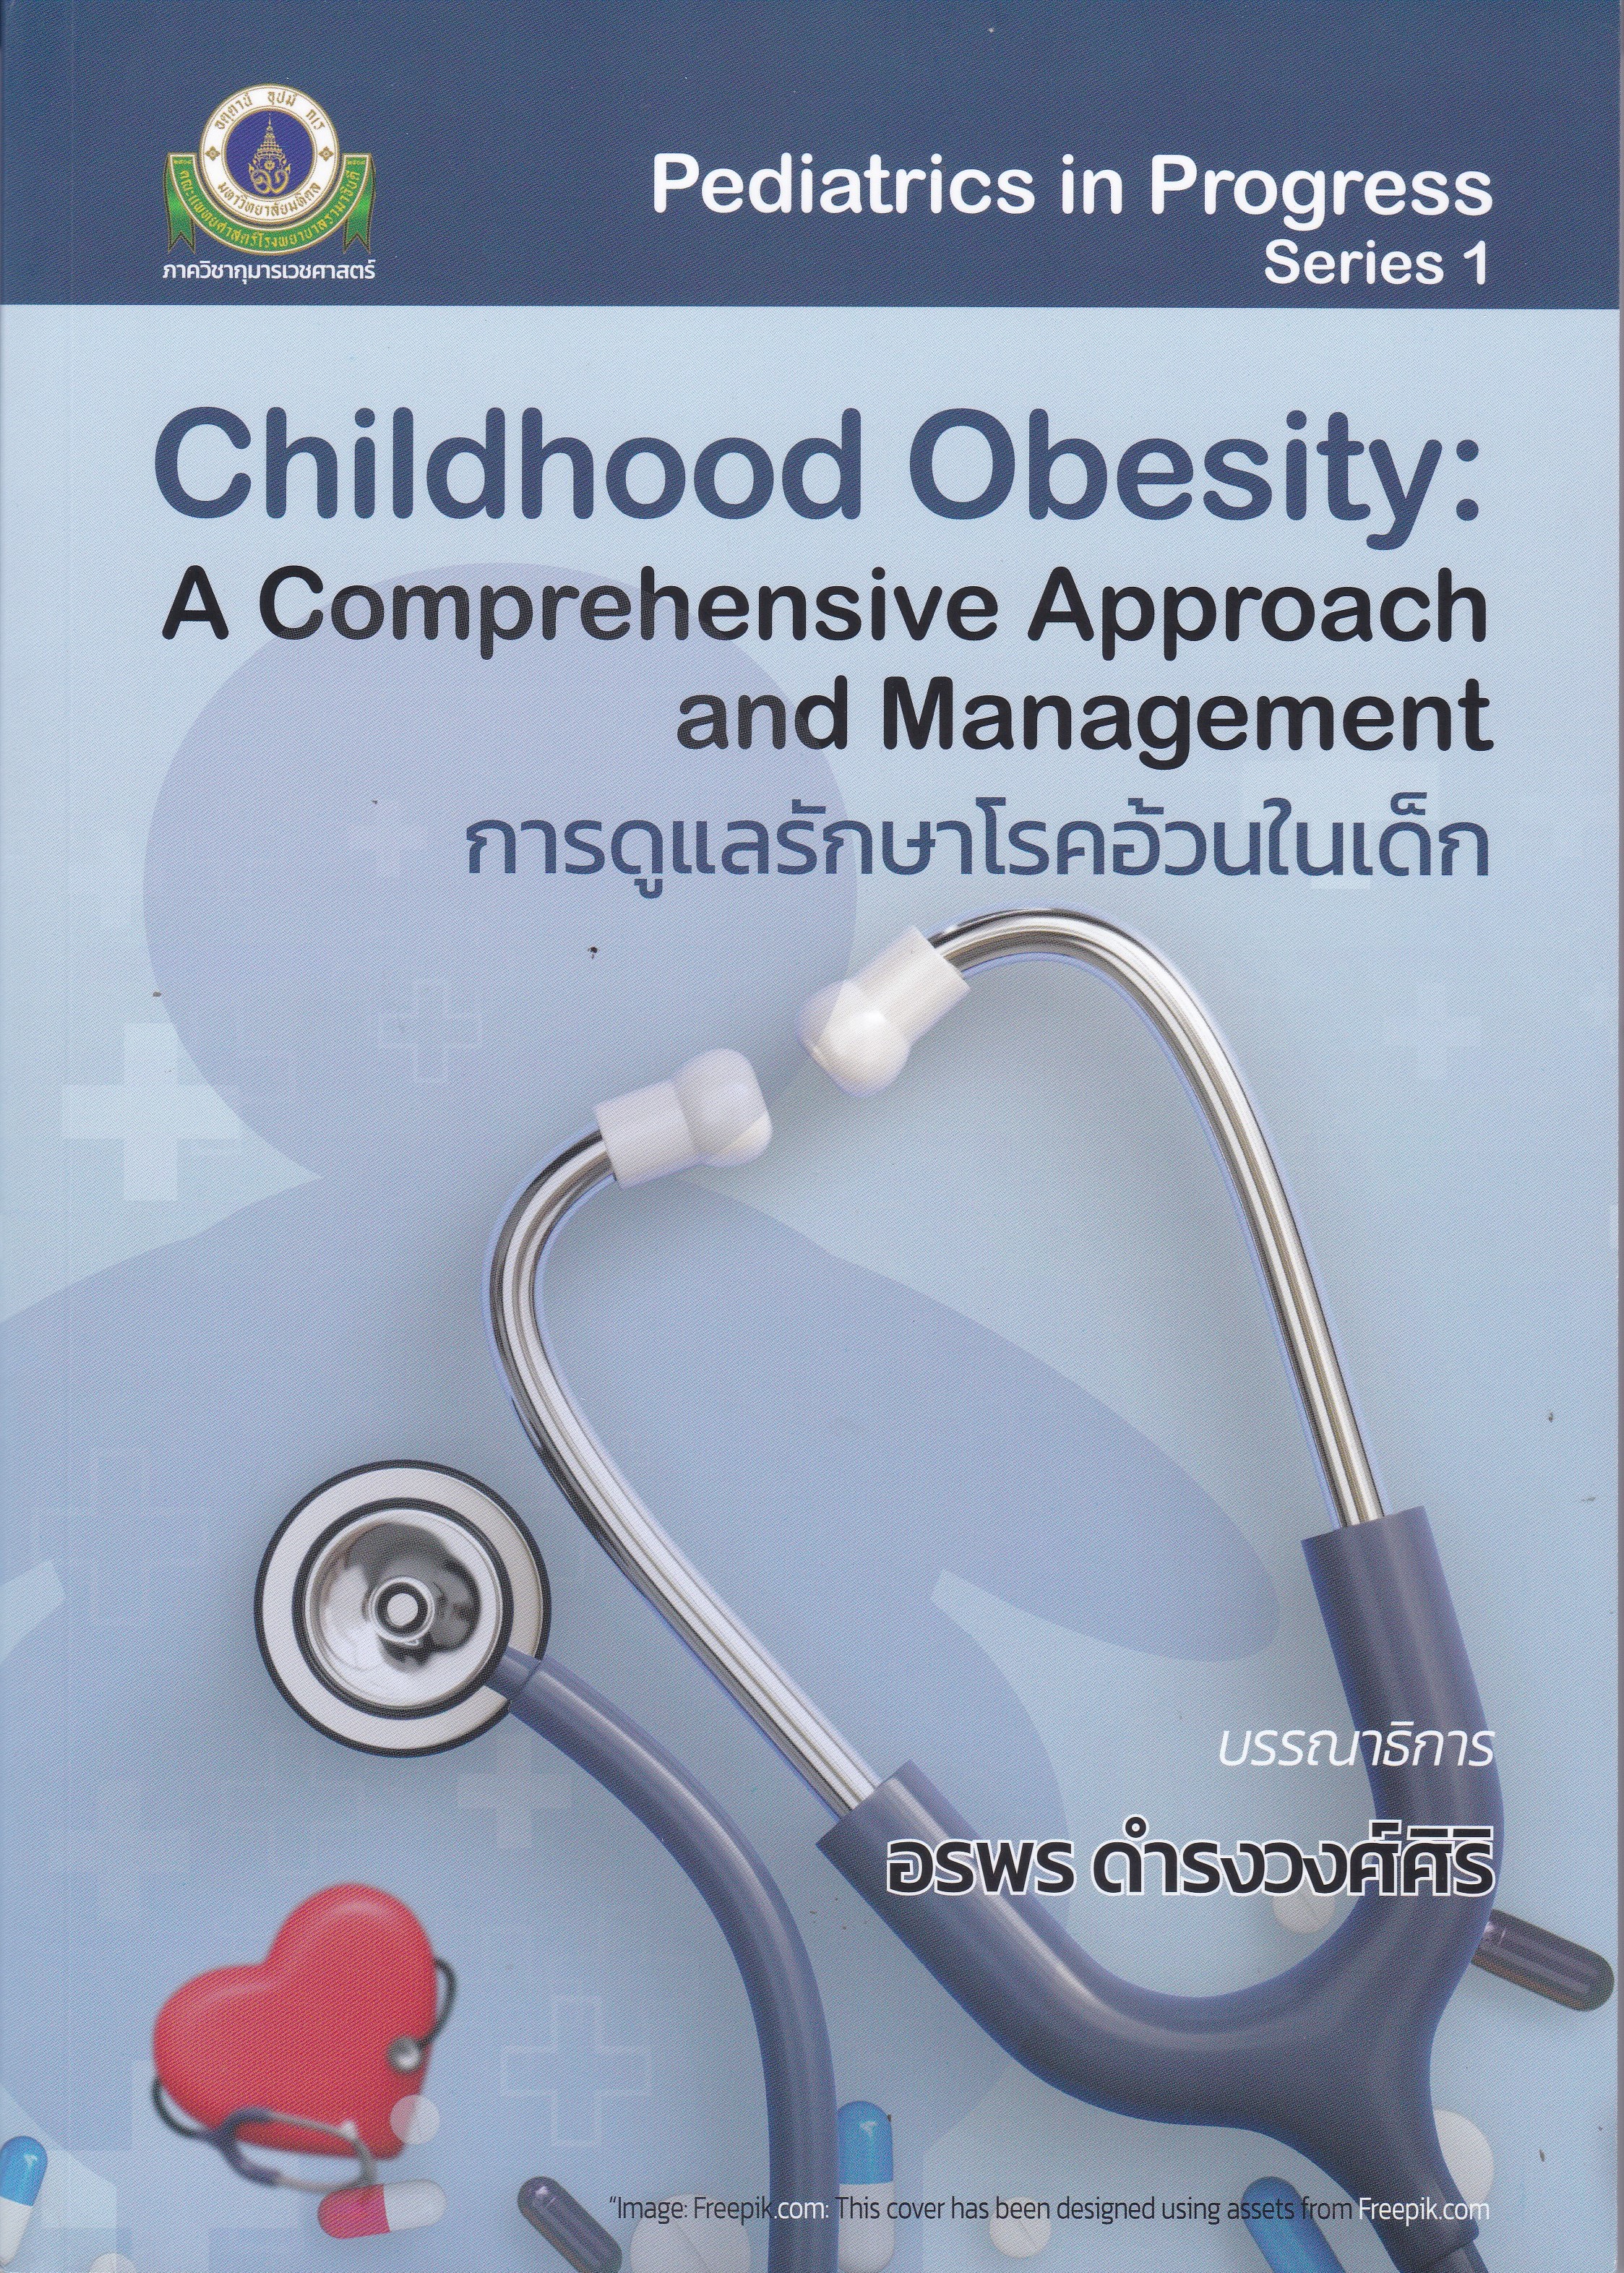 การดูแลรักษาโรคอ้วนในเด็ก (CHILDHOOD OBESITY: A COMPREHENSIVE APPROACH AND MANAGEMENT)